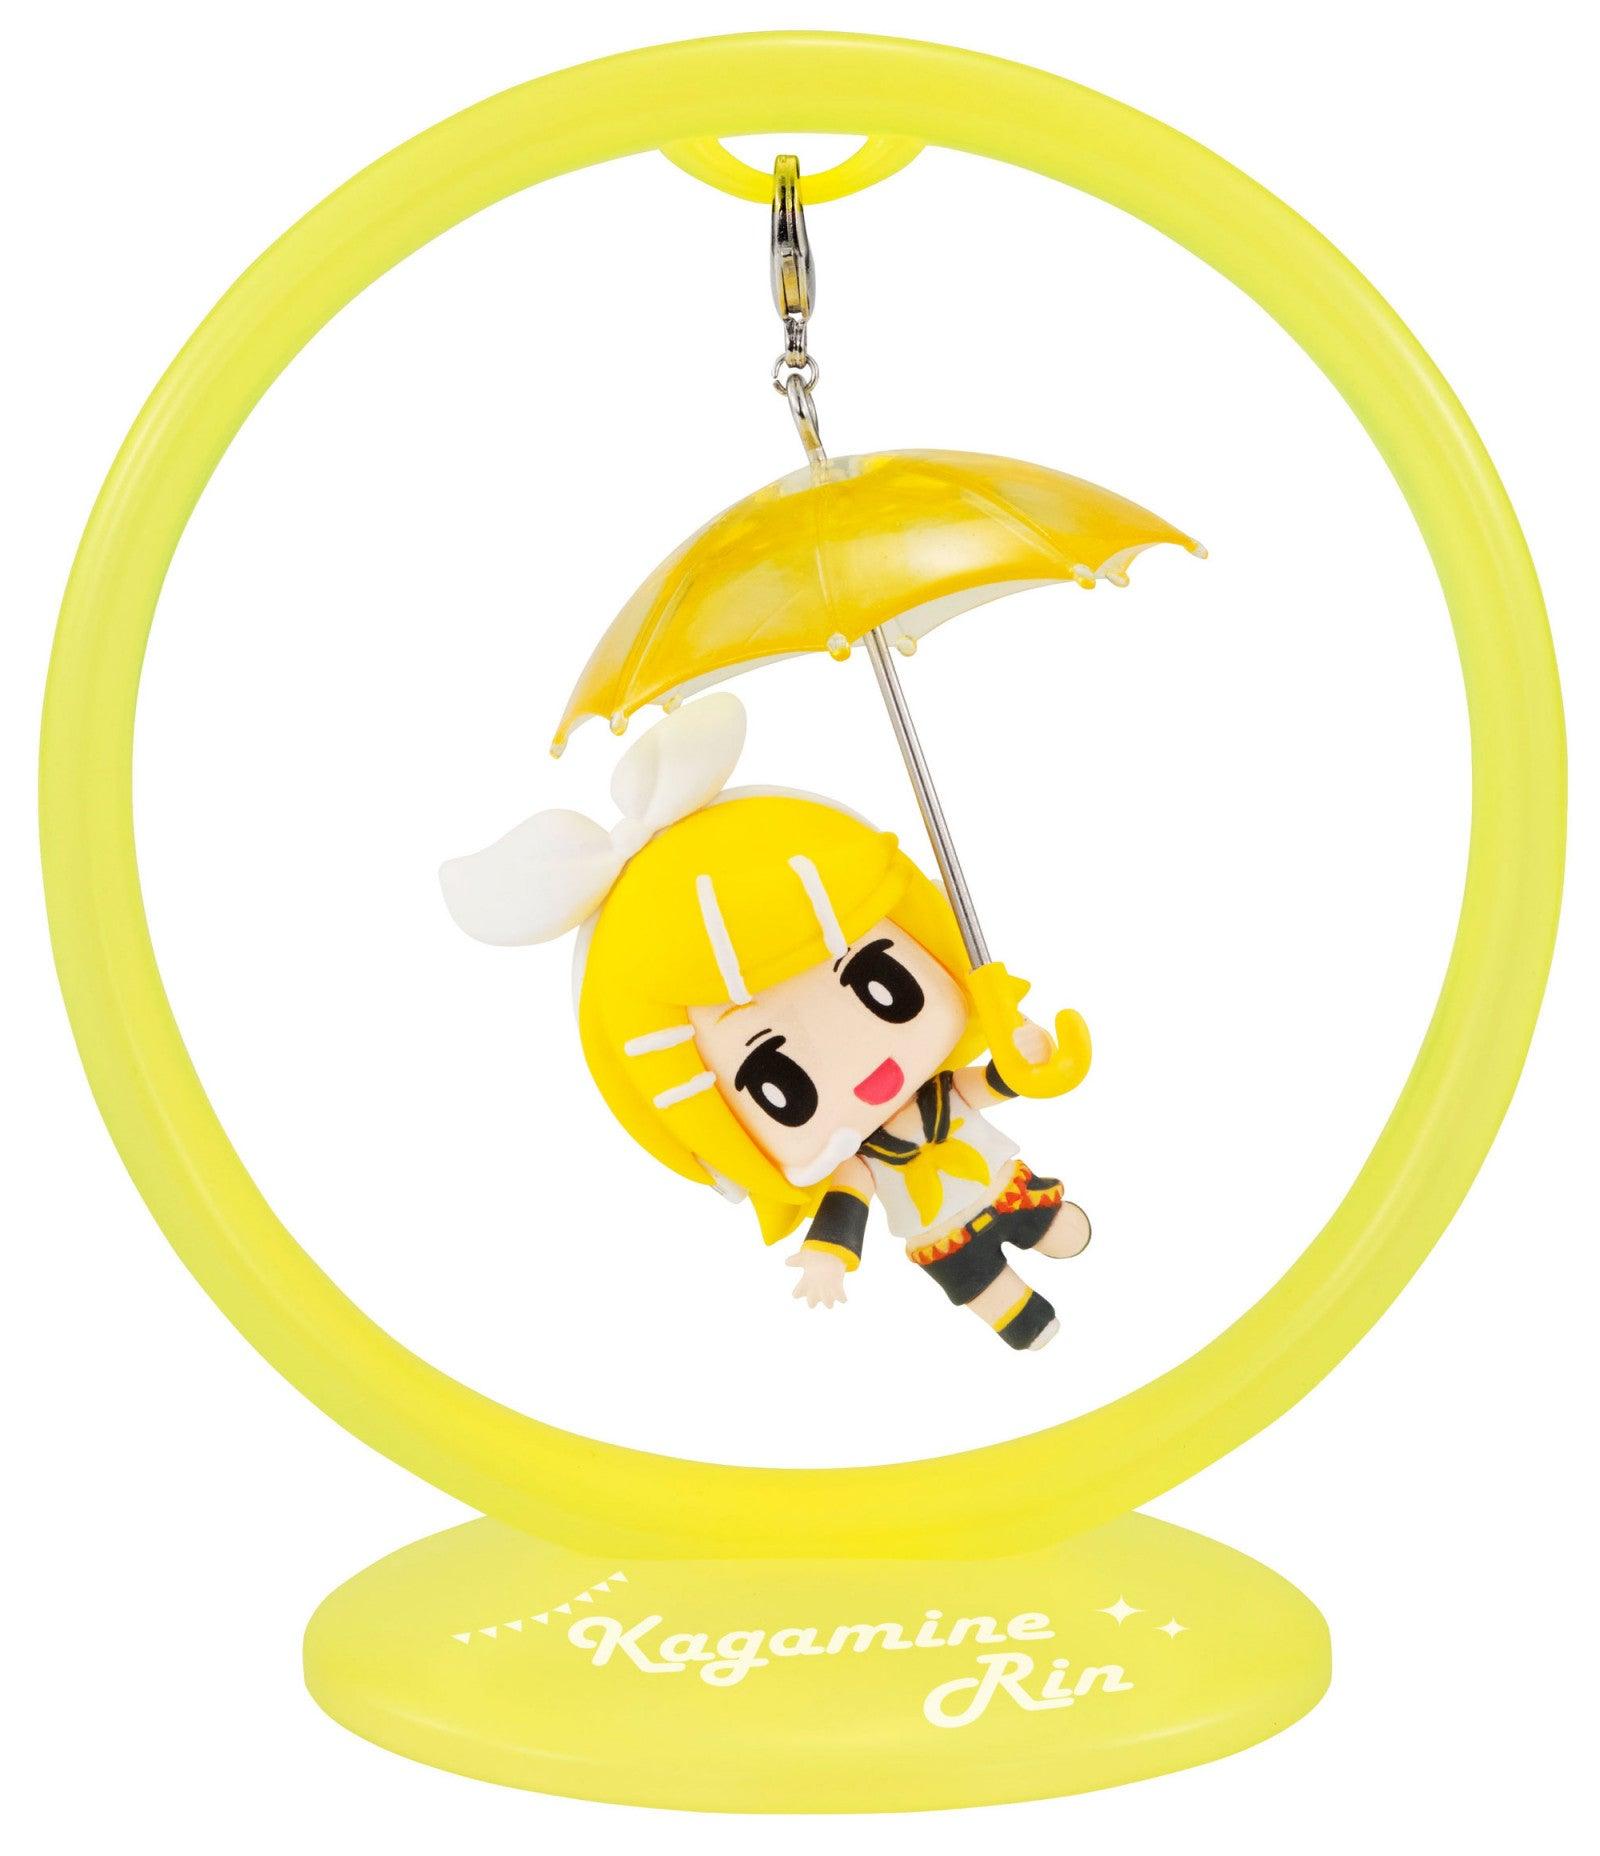 VR-102489 Hatsune Miku Trapeze Figure Kagamine Rin - Good Smile Company - Titan Pop Culture